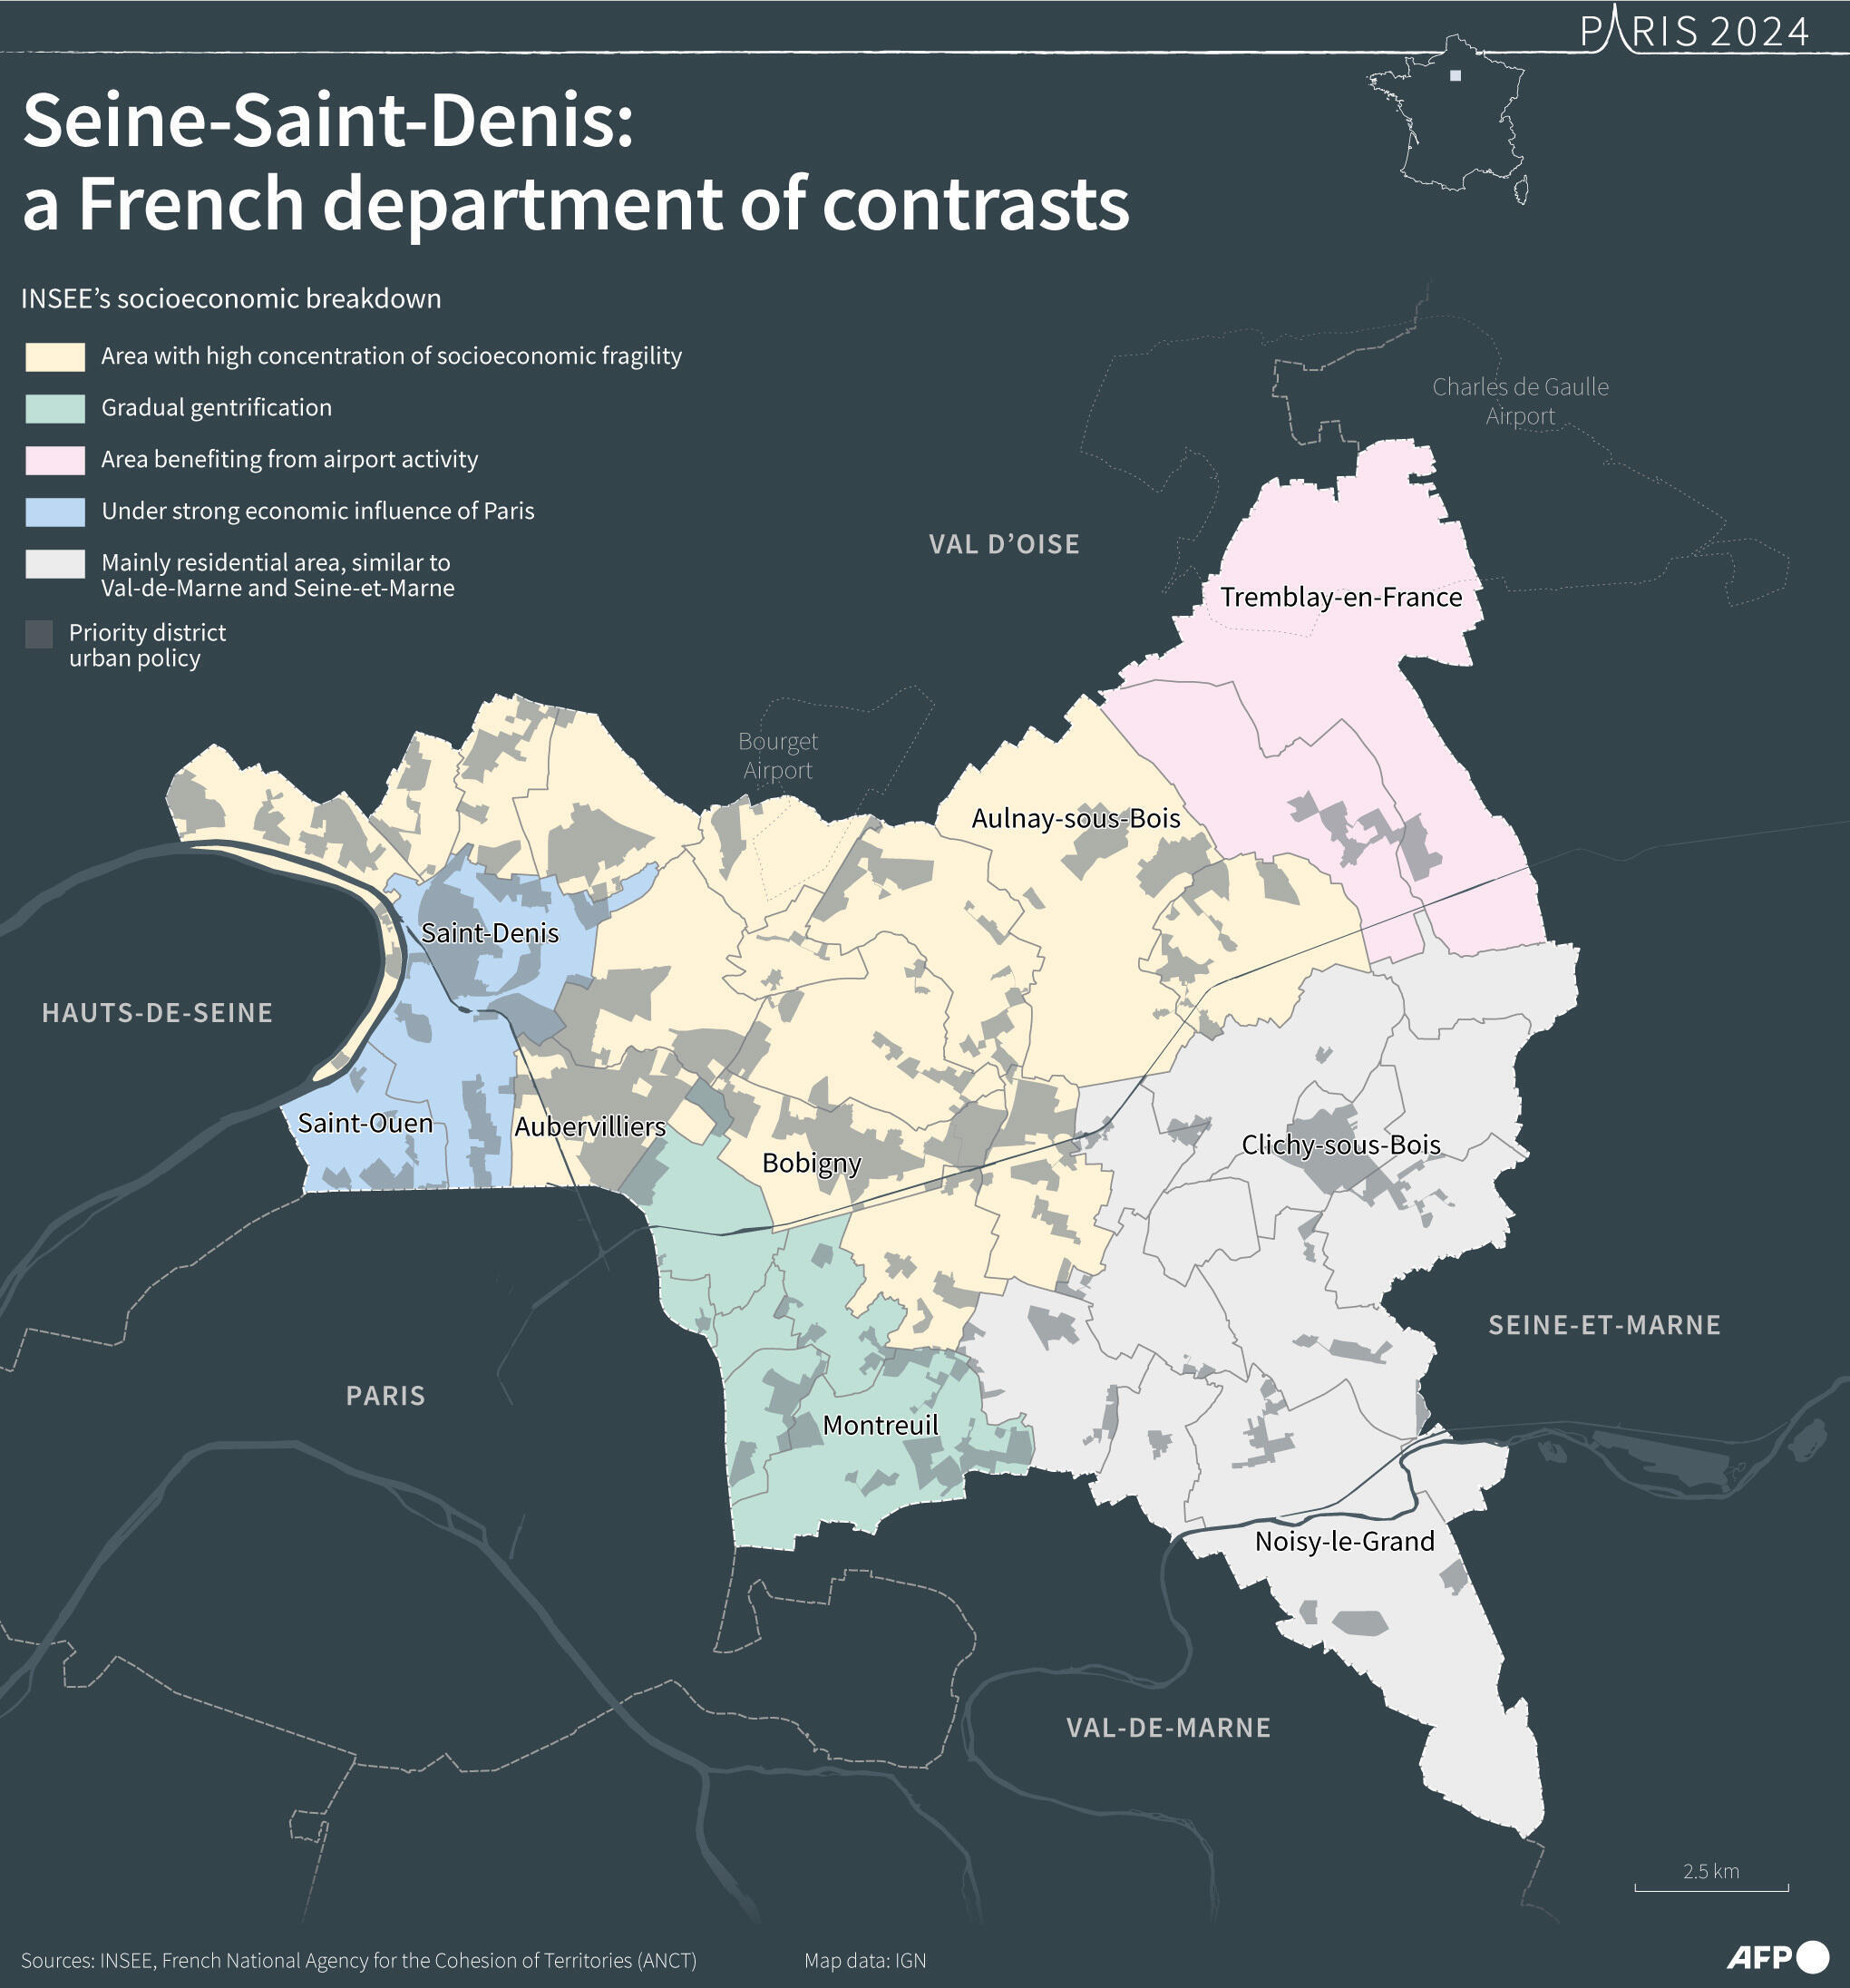 Olympische Spiele 2024 in Paris: Seine-Saint-Denis, ein französisches Departement der Kontraste.